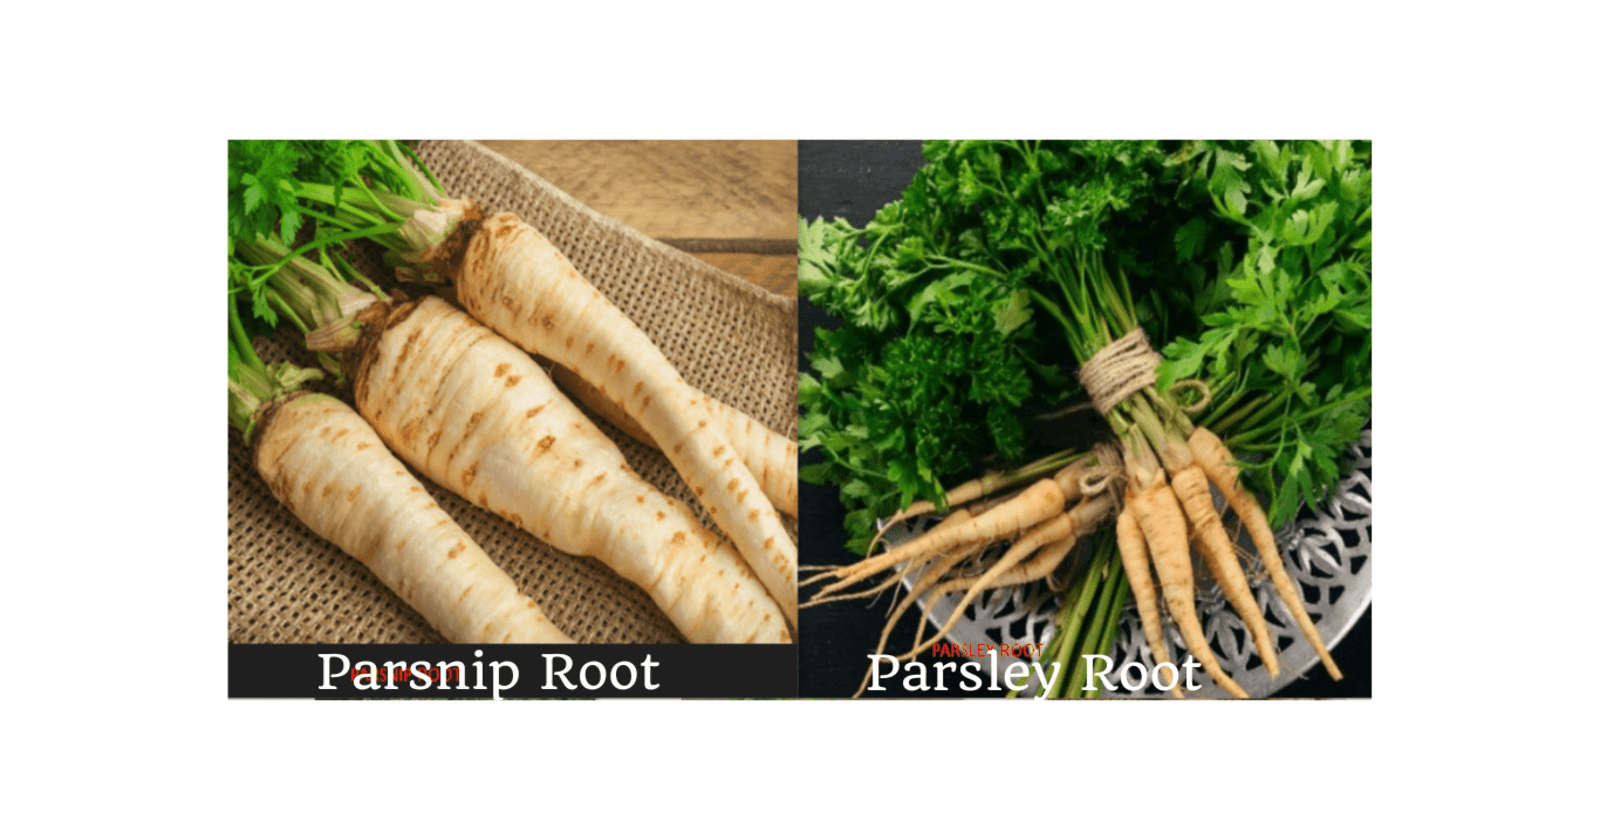 Parsnip root vs Parsley root